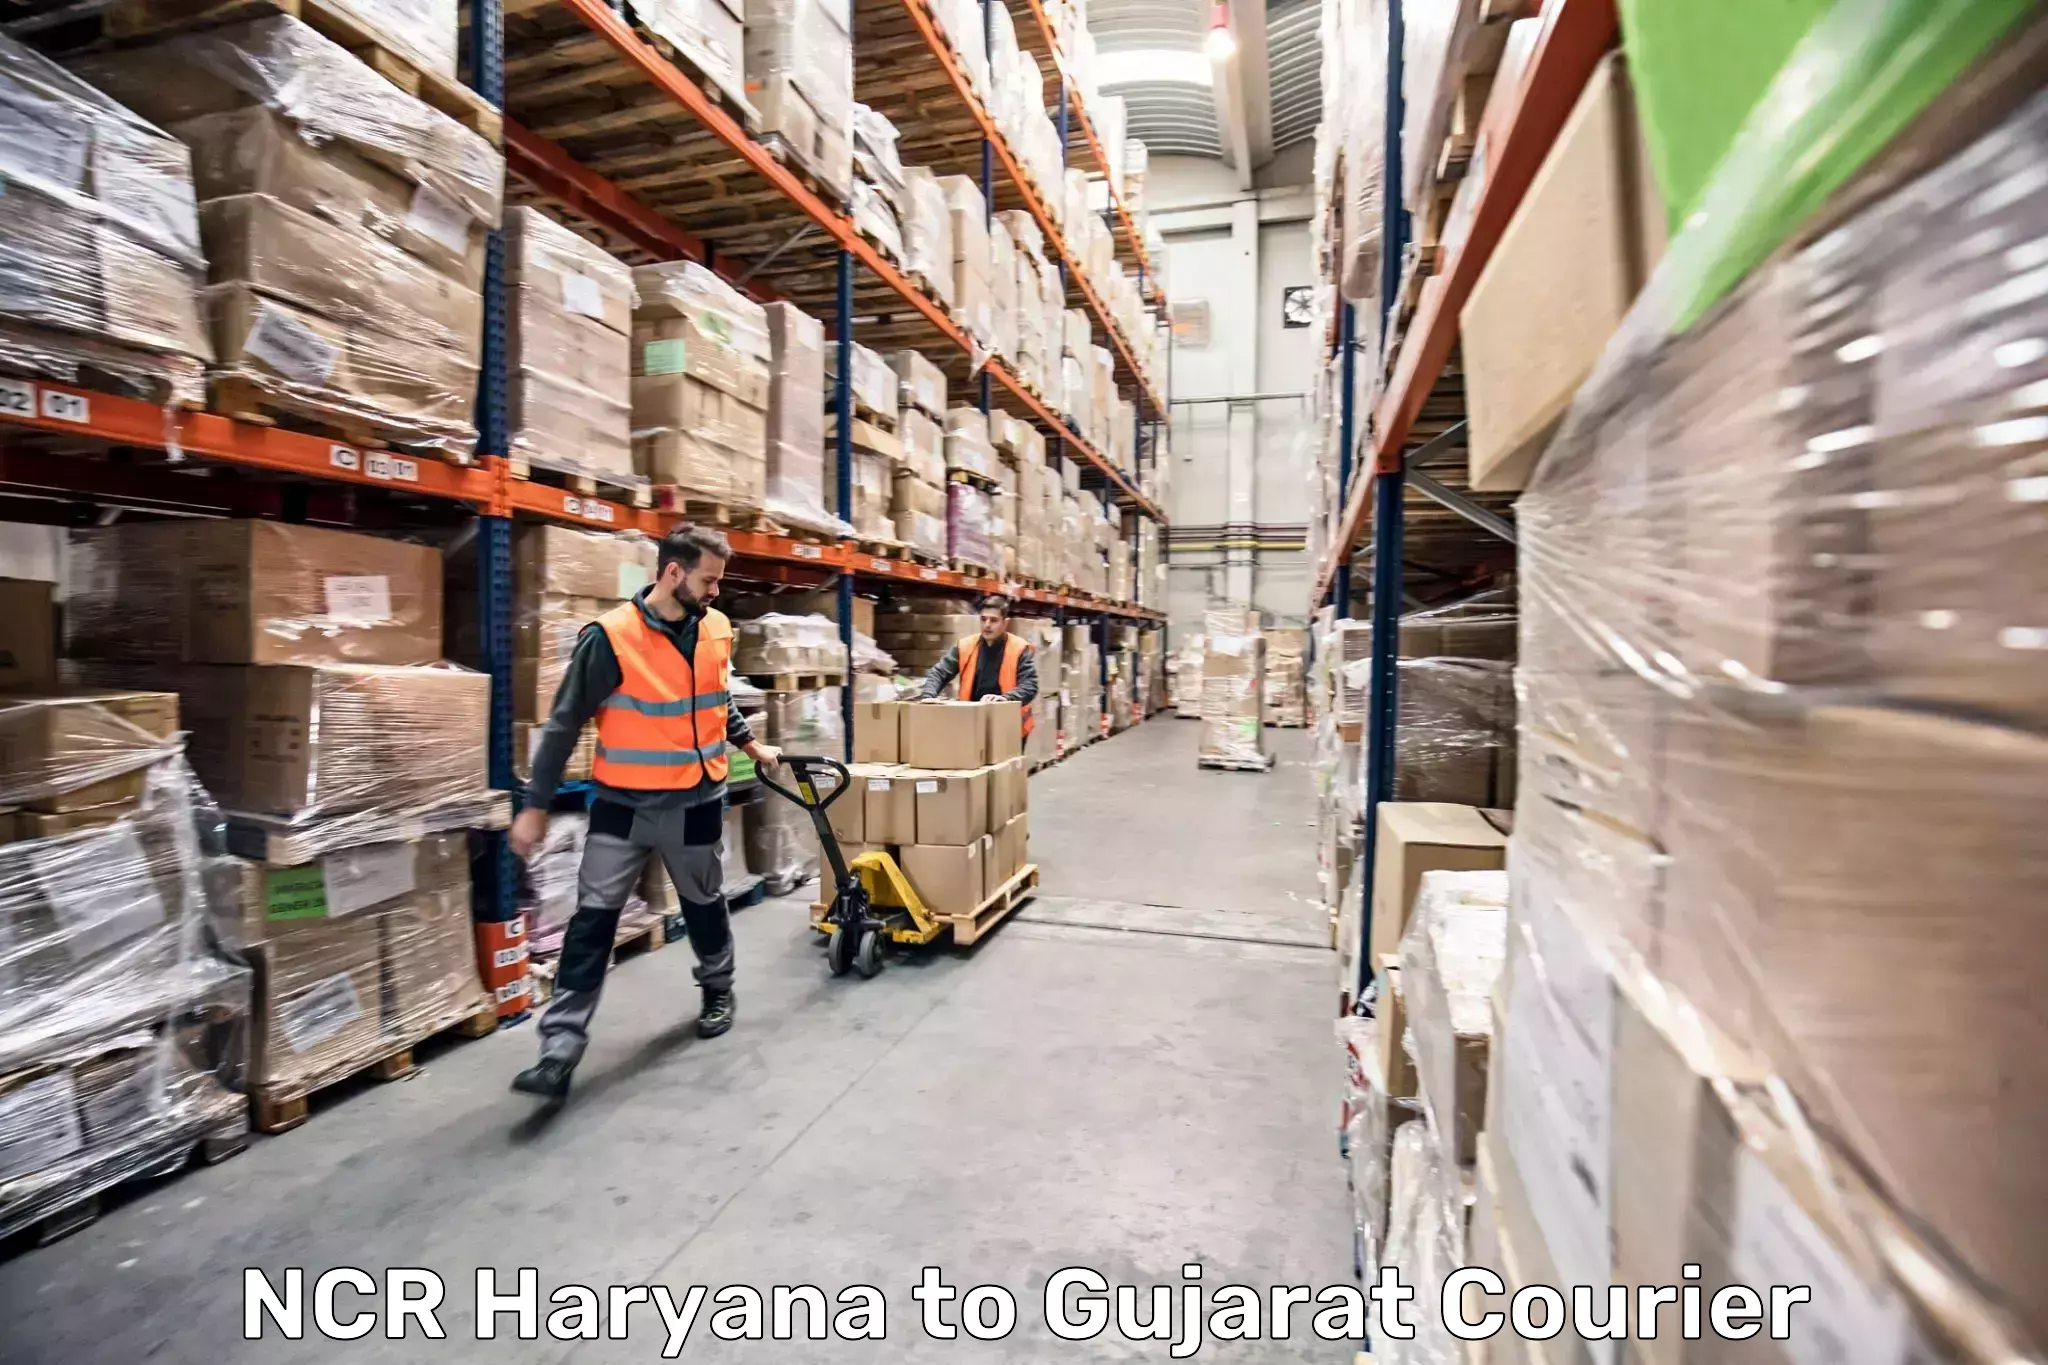 Luggage transfer service NCR Haryana to Mandvi